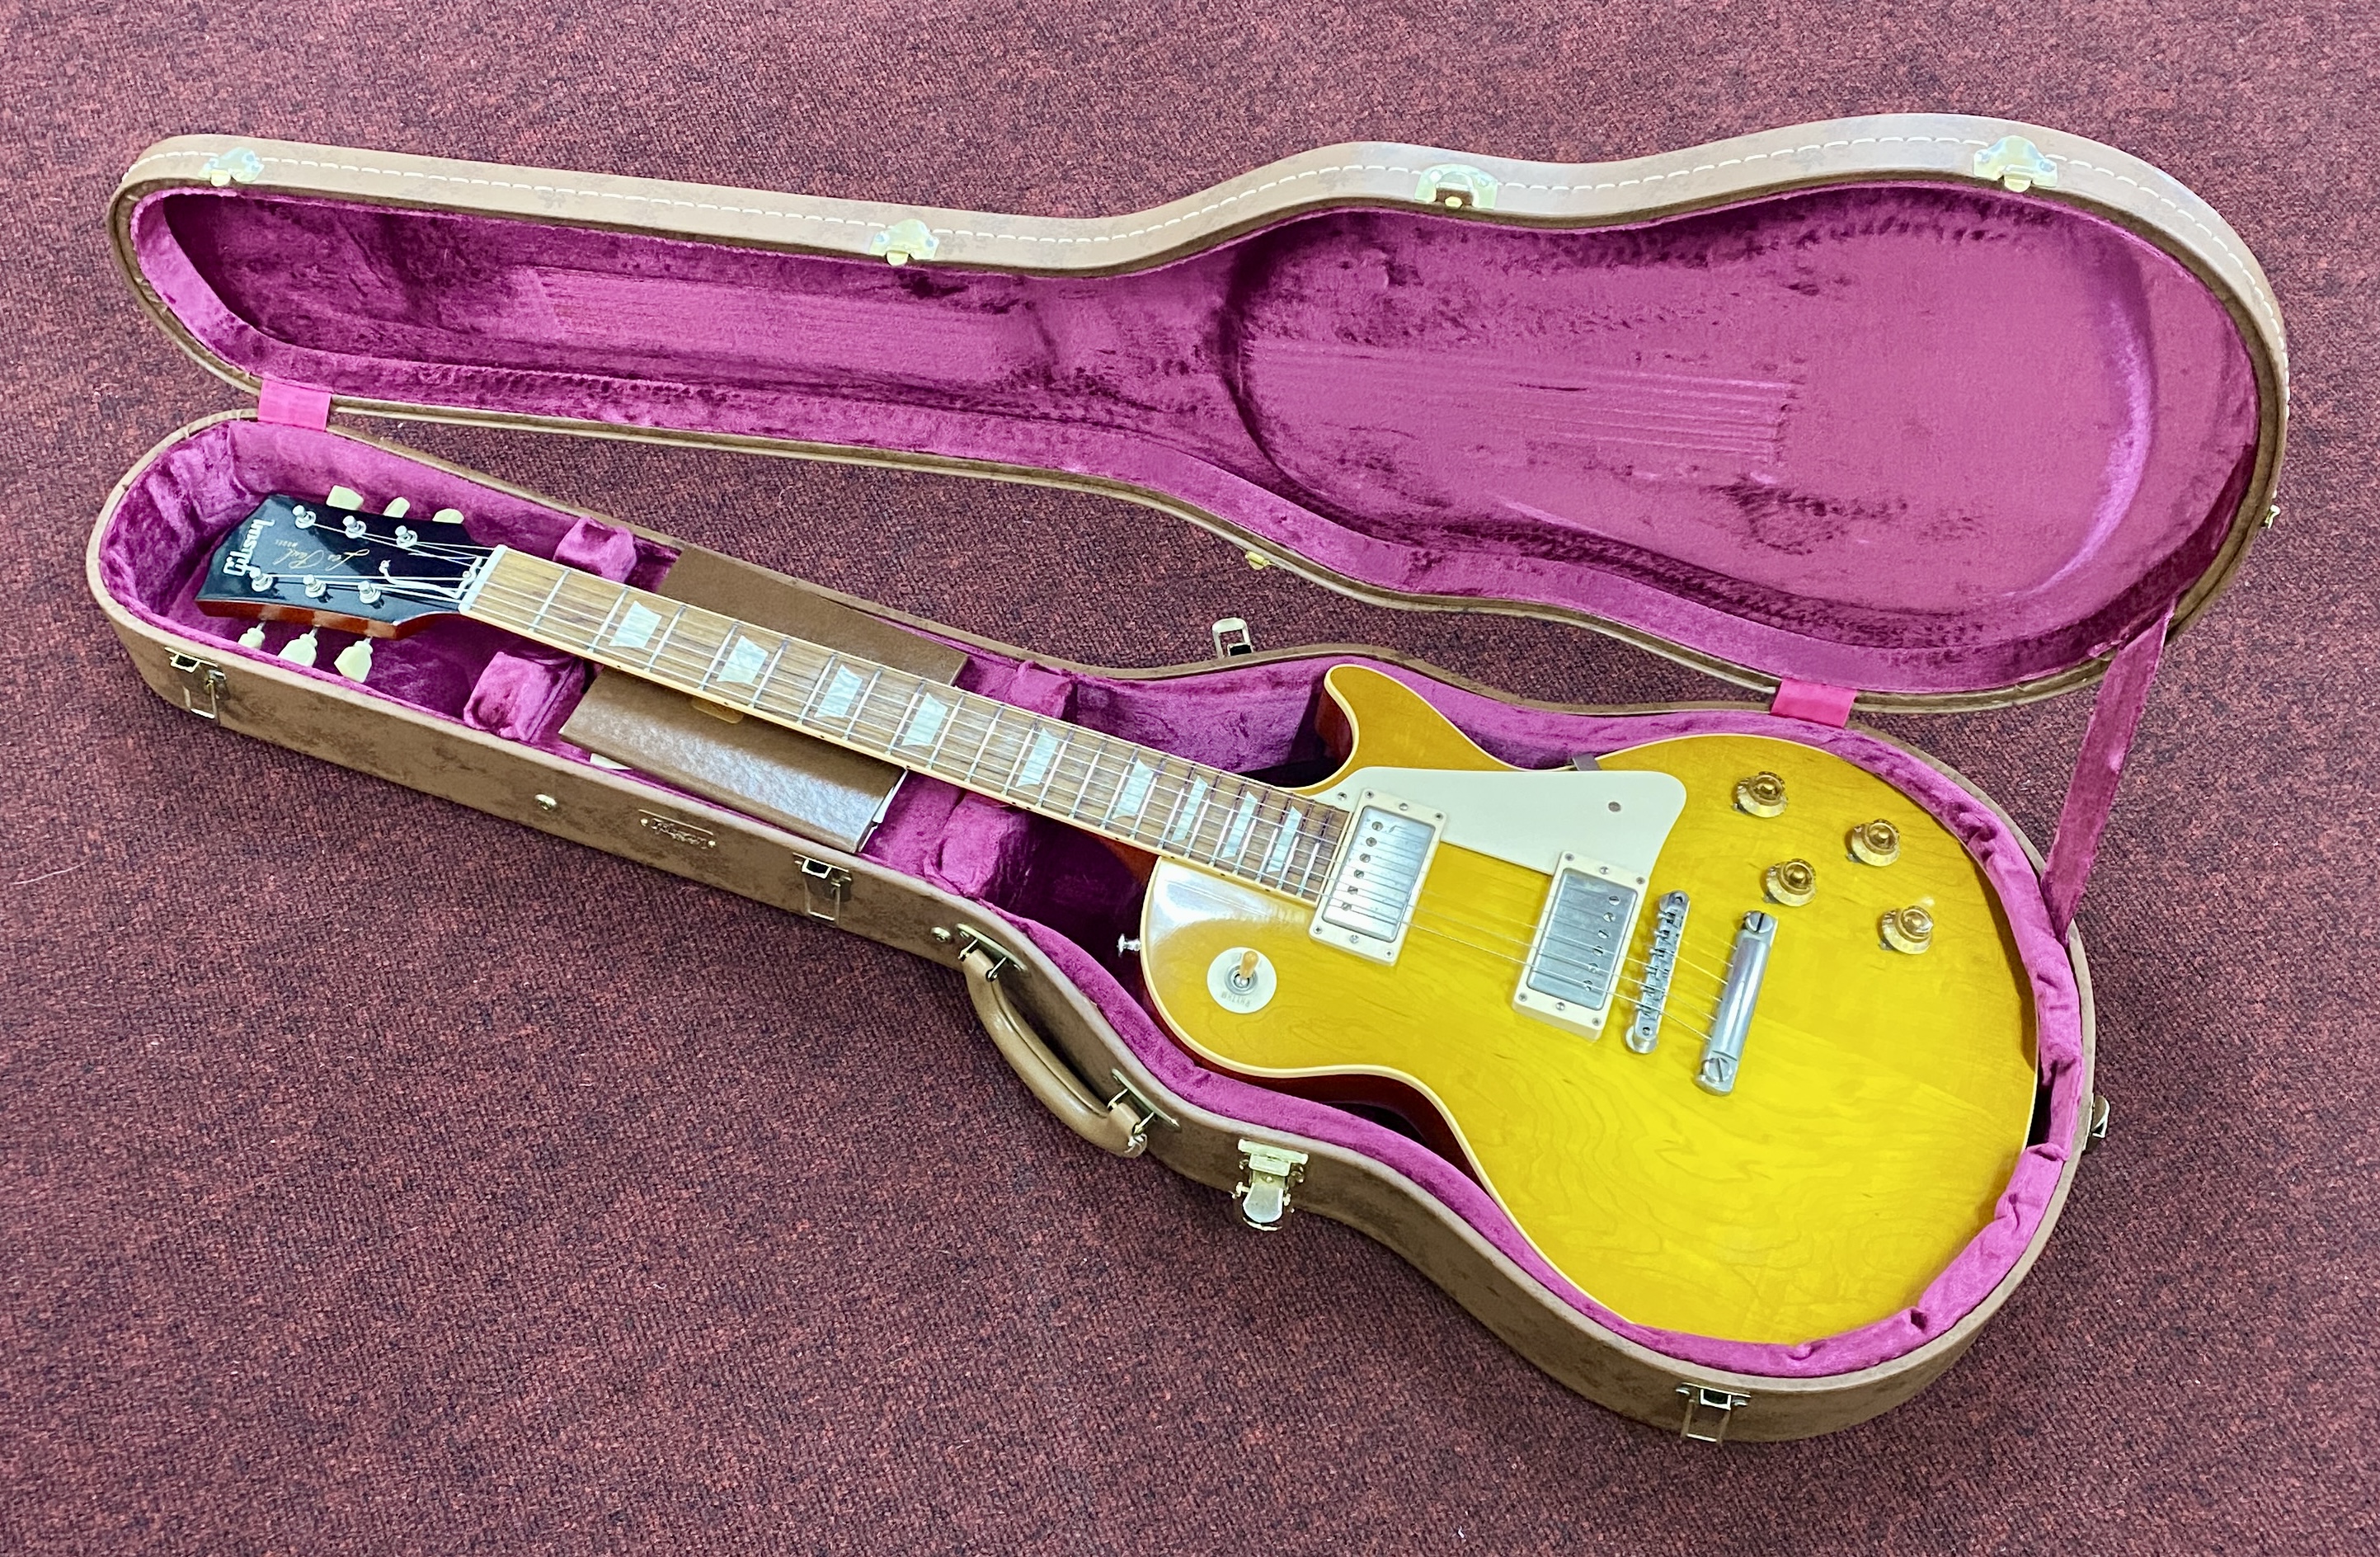 Gibson Les Paul Classic Lemon Burst Guitar 2012, serial 821031, model LPR8, Custom of the 1958 plain